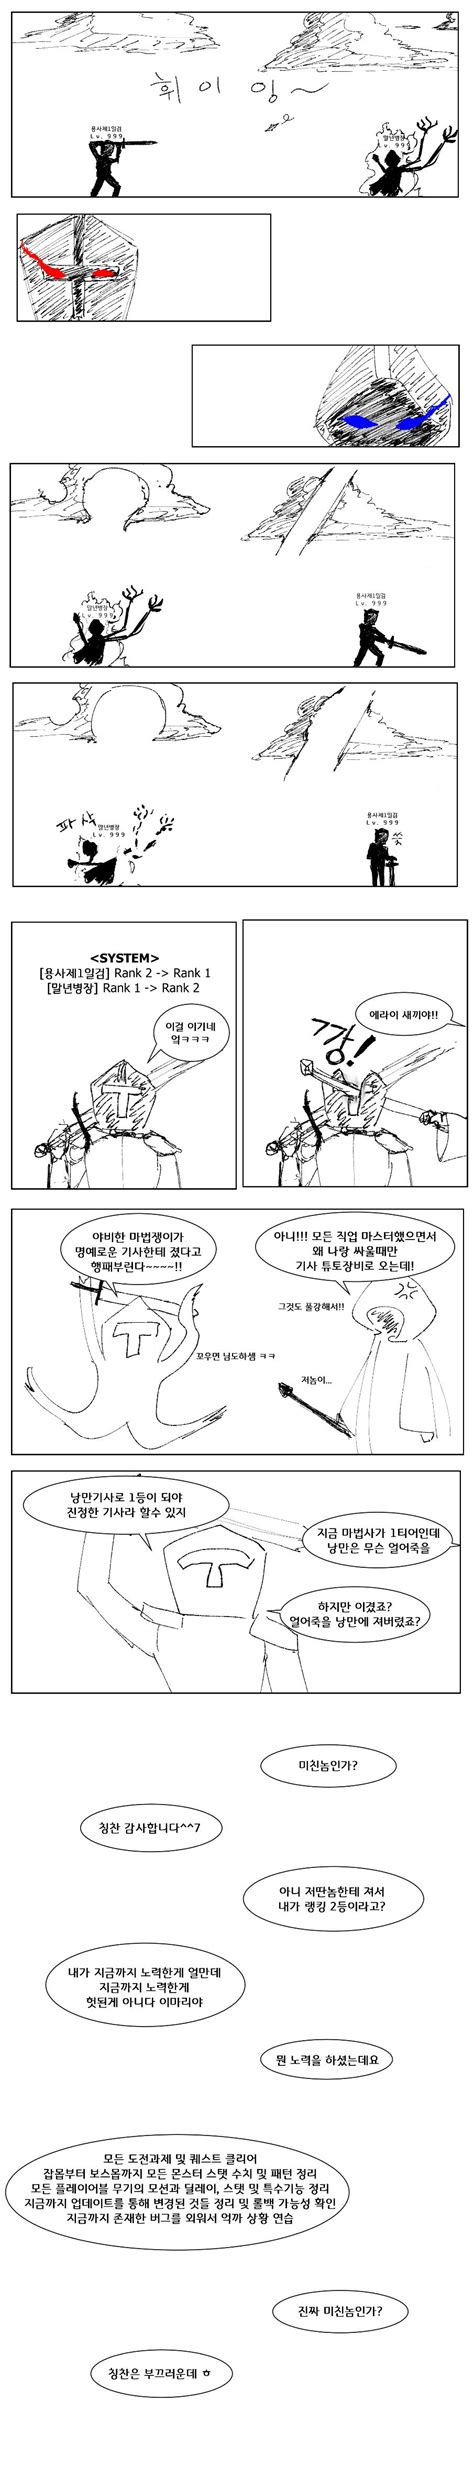 고인물 뉴비 만화